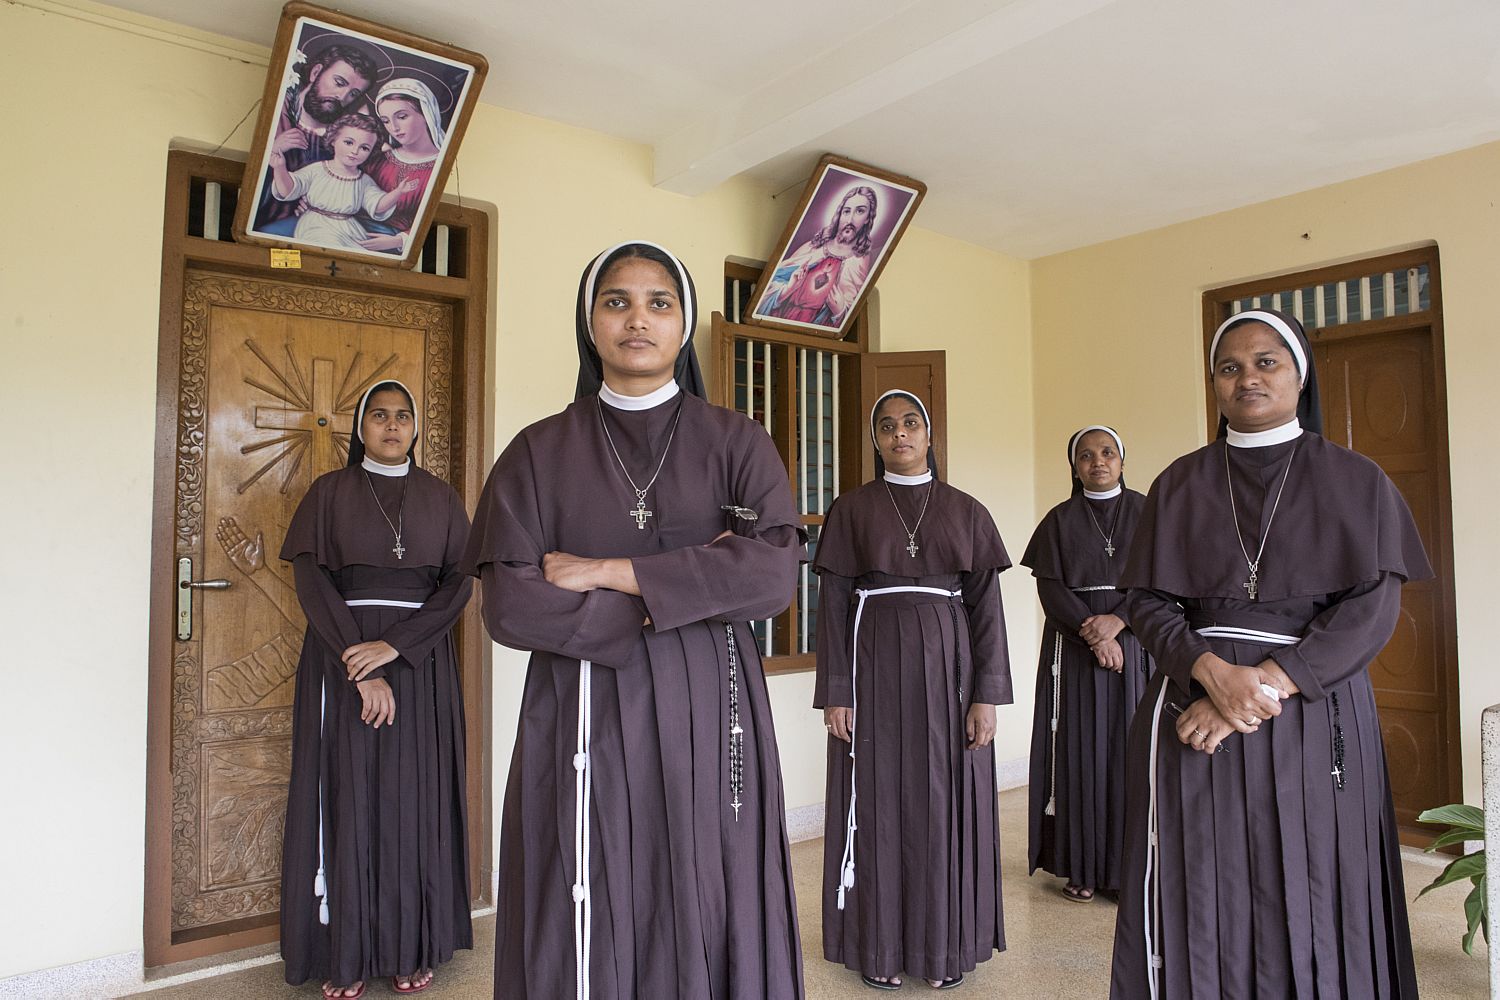 Freiras processam bispo após ele acusar a Madre Superiora de fazer